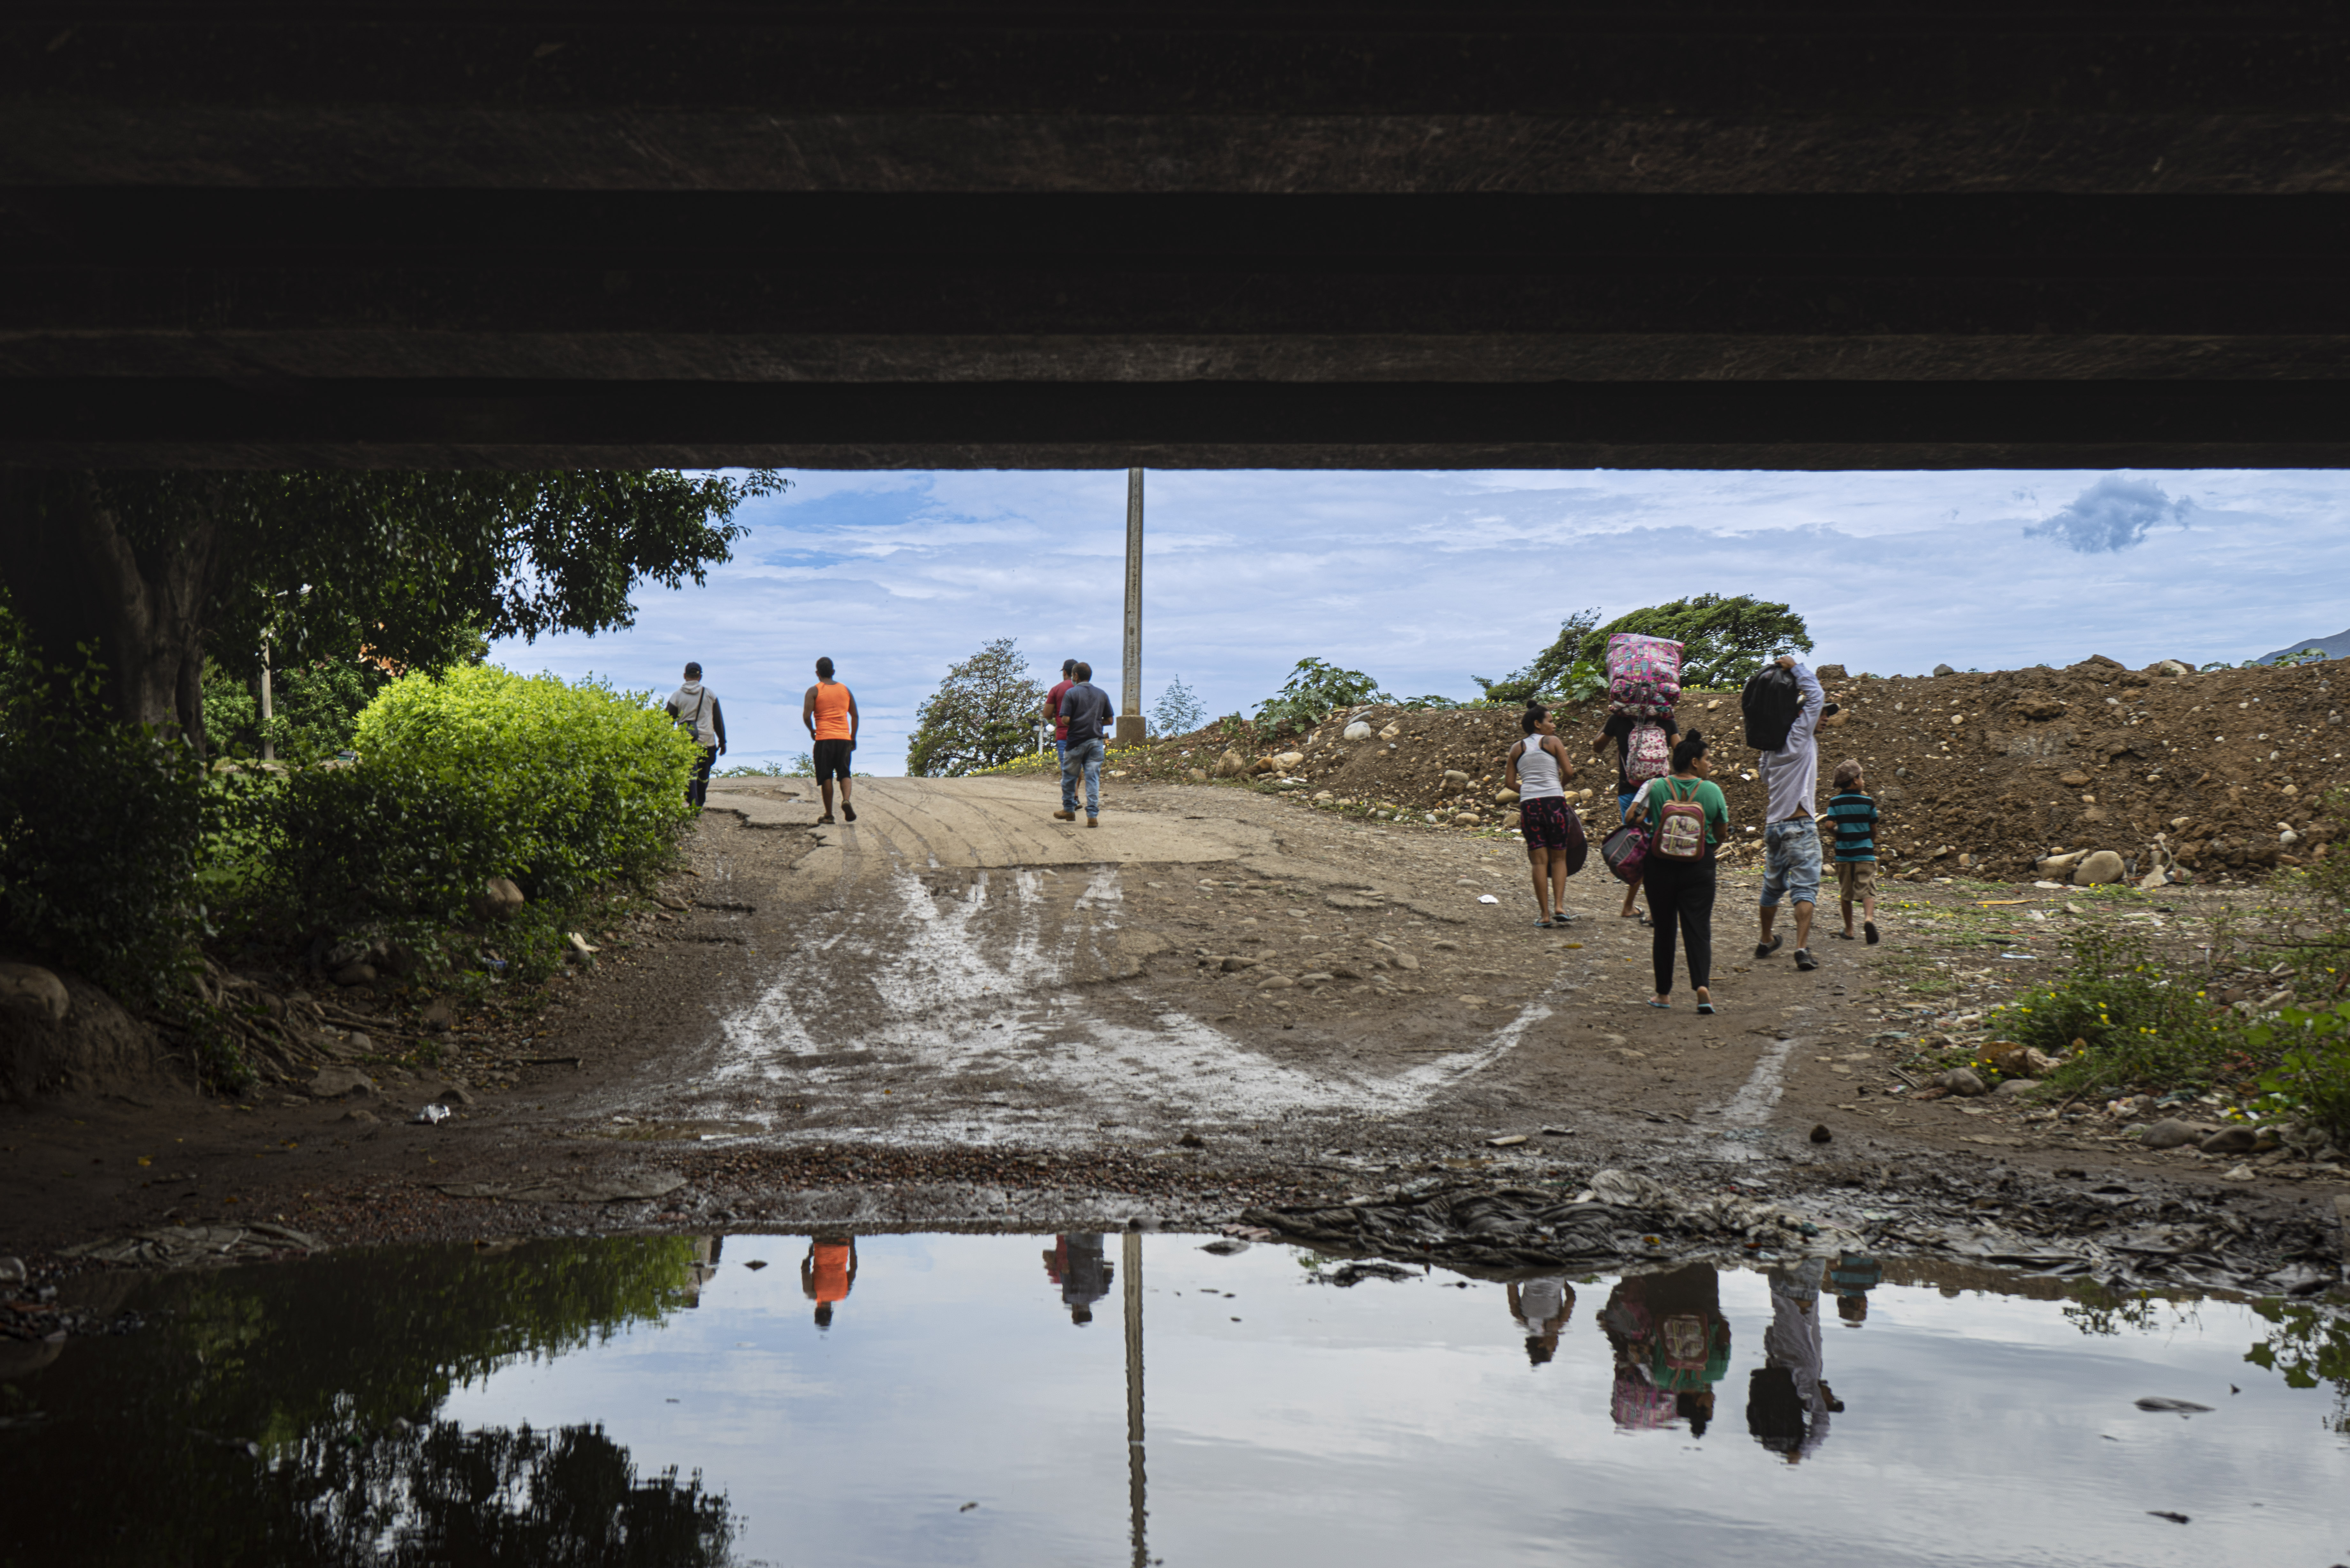 Imagen noticia ‘La Ruta del Caminante’ revela las historias de los refugiados venezolanos